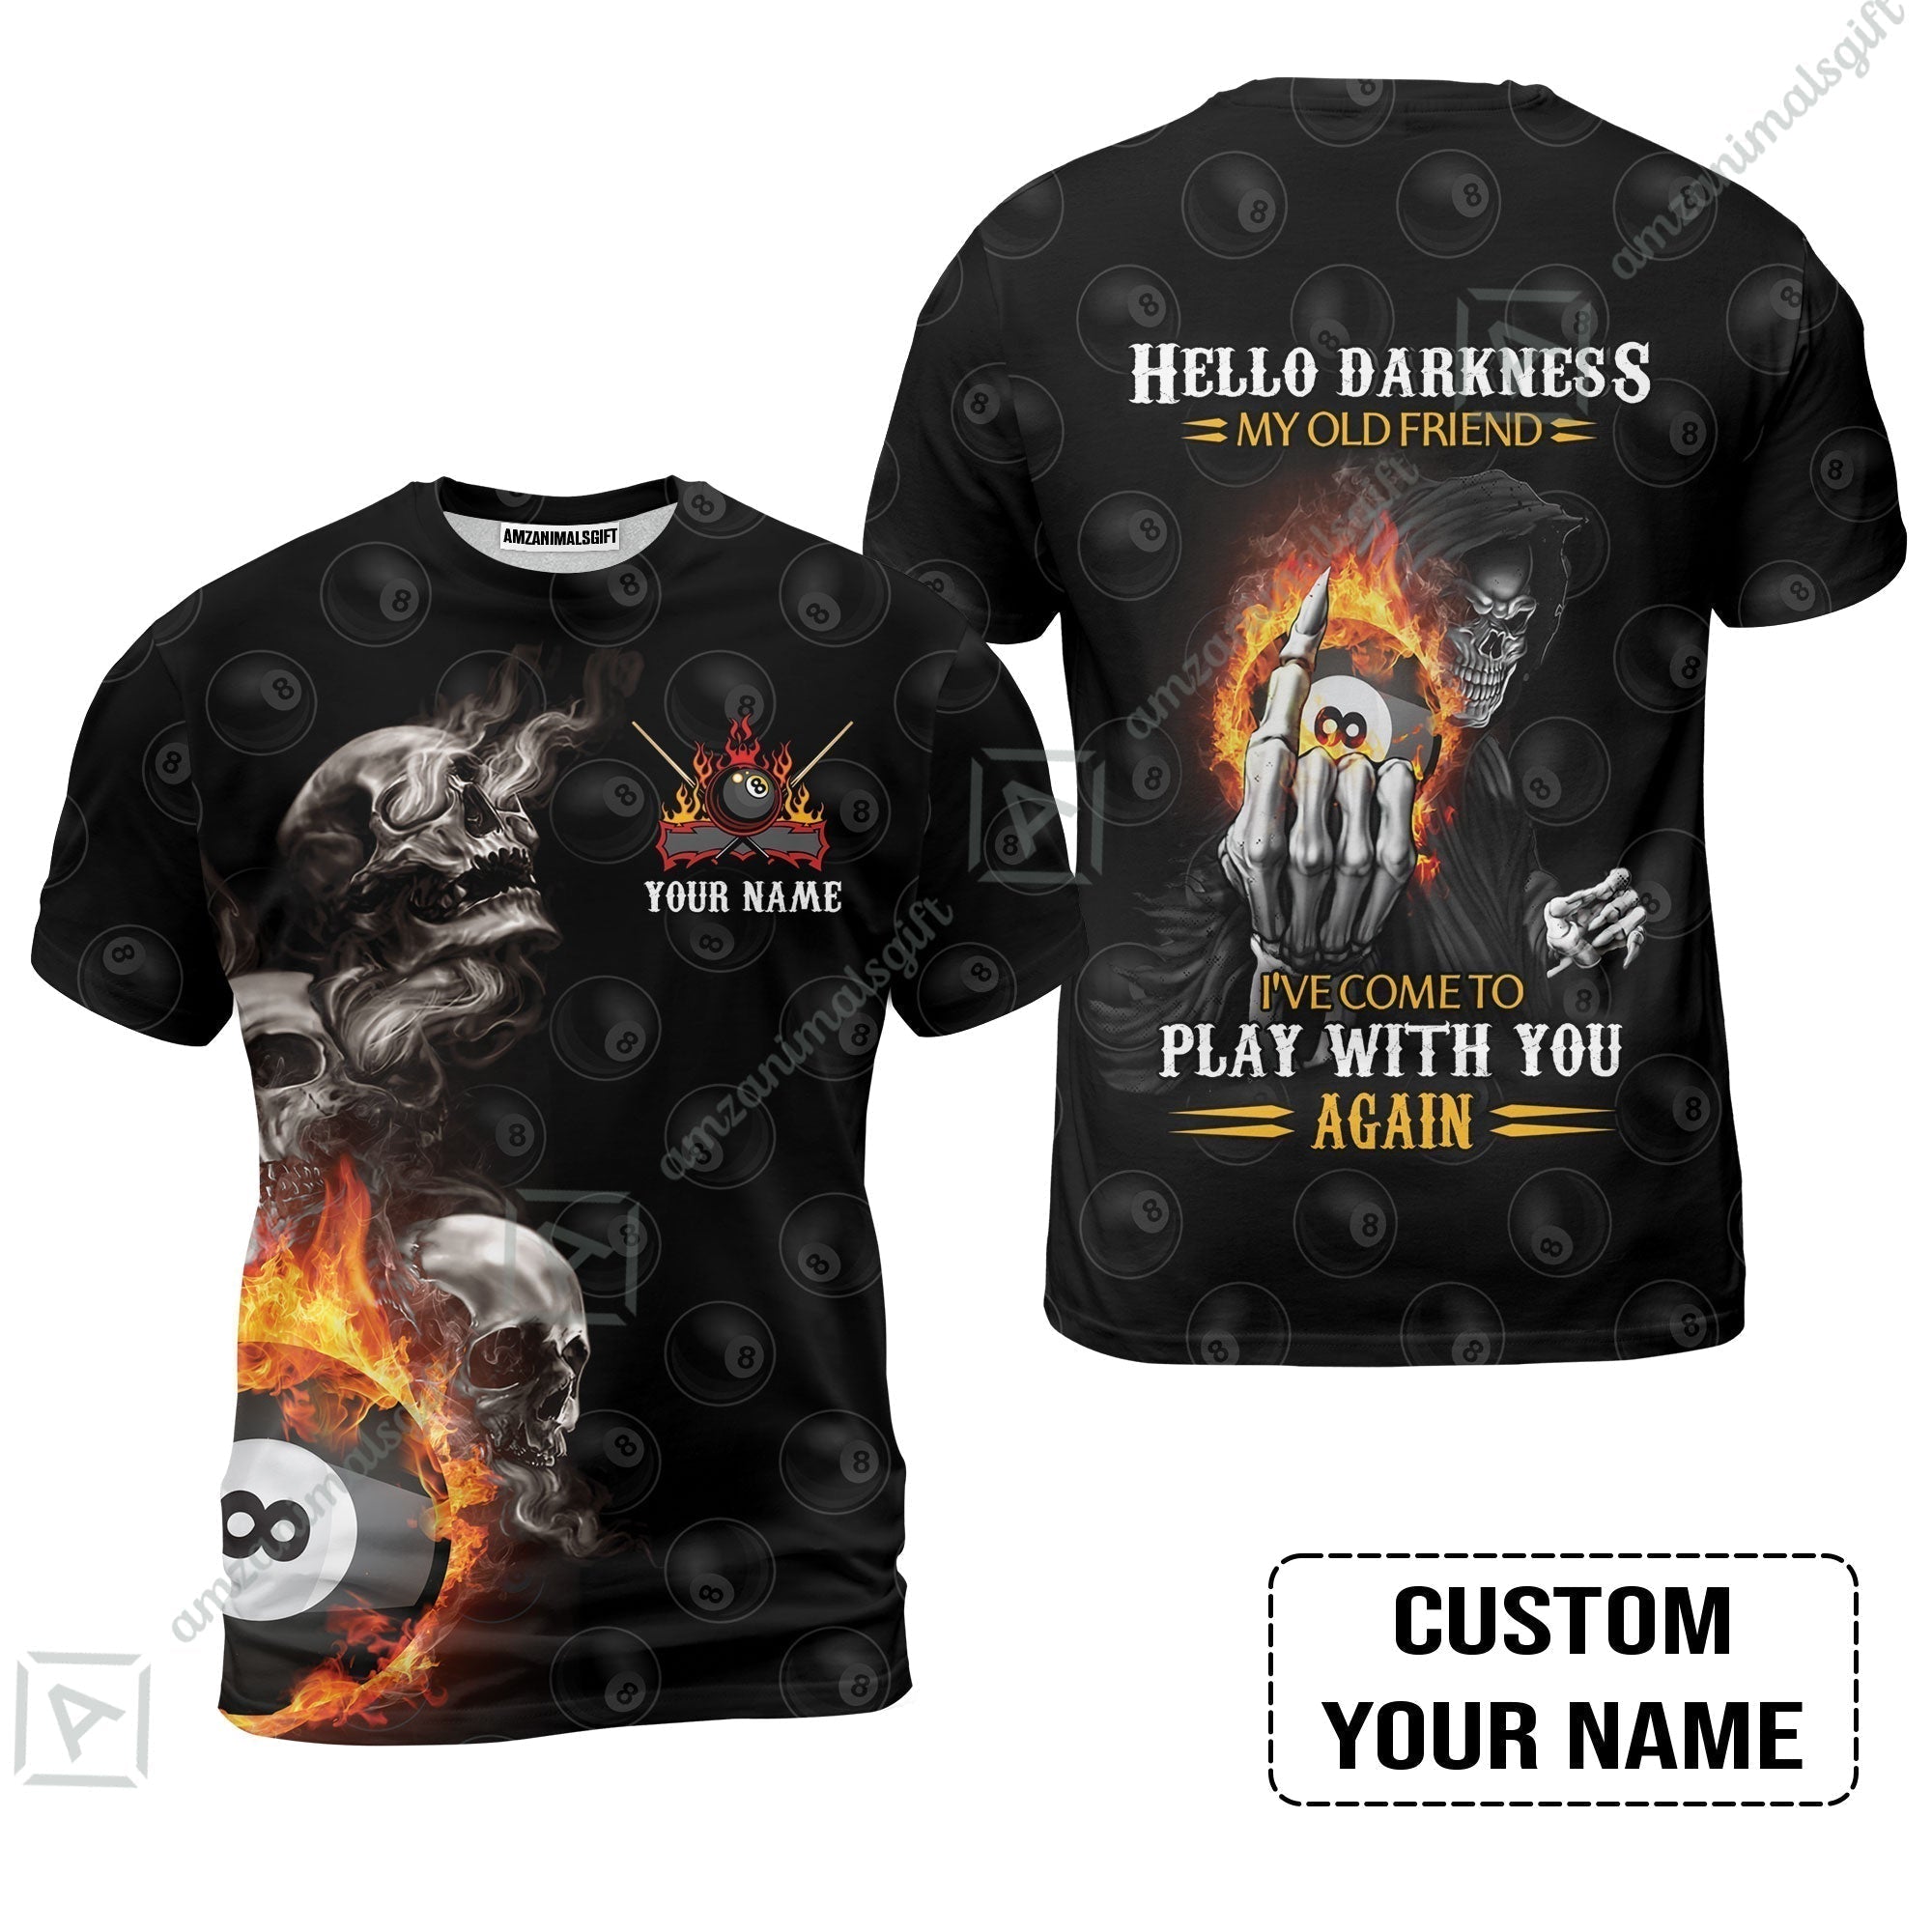 Custom Name Billiard T-Shirt, Personalized Skull Reaper 8 Ball Pool Billiards, Hello Darkness My Old Friend T-Shirt